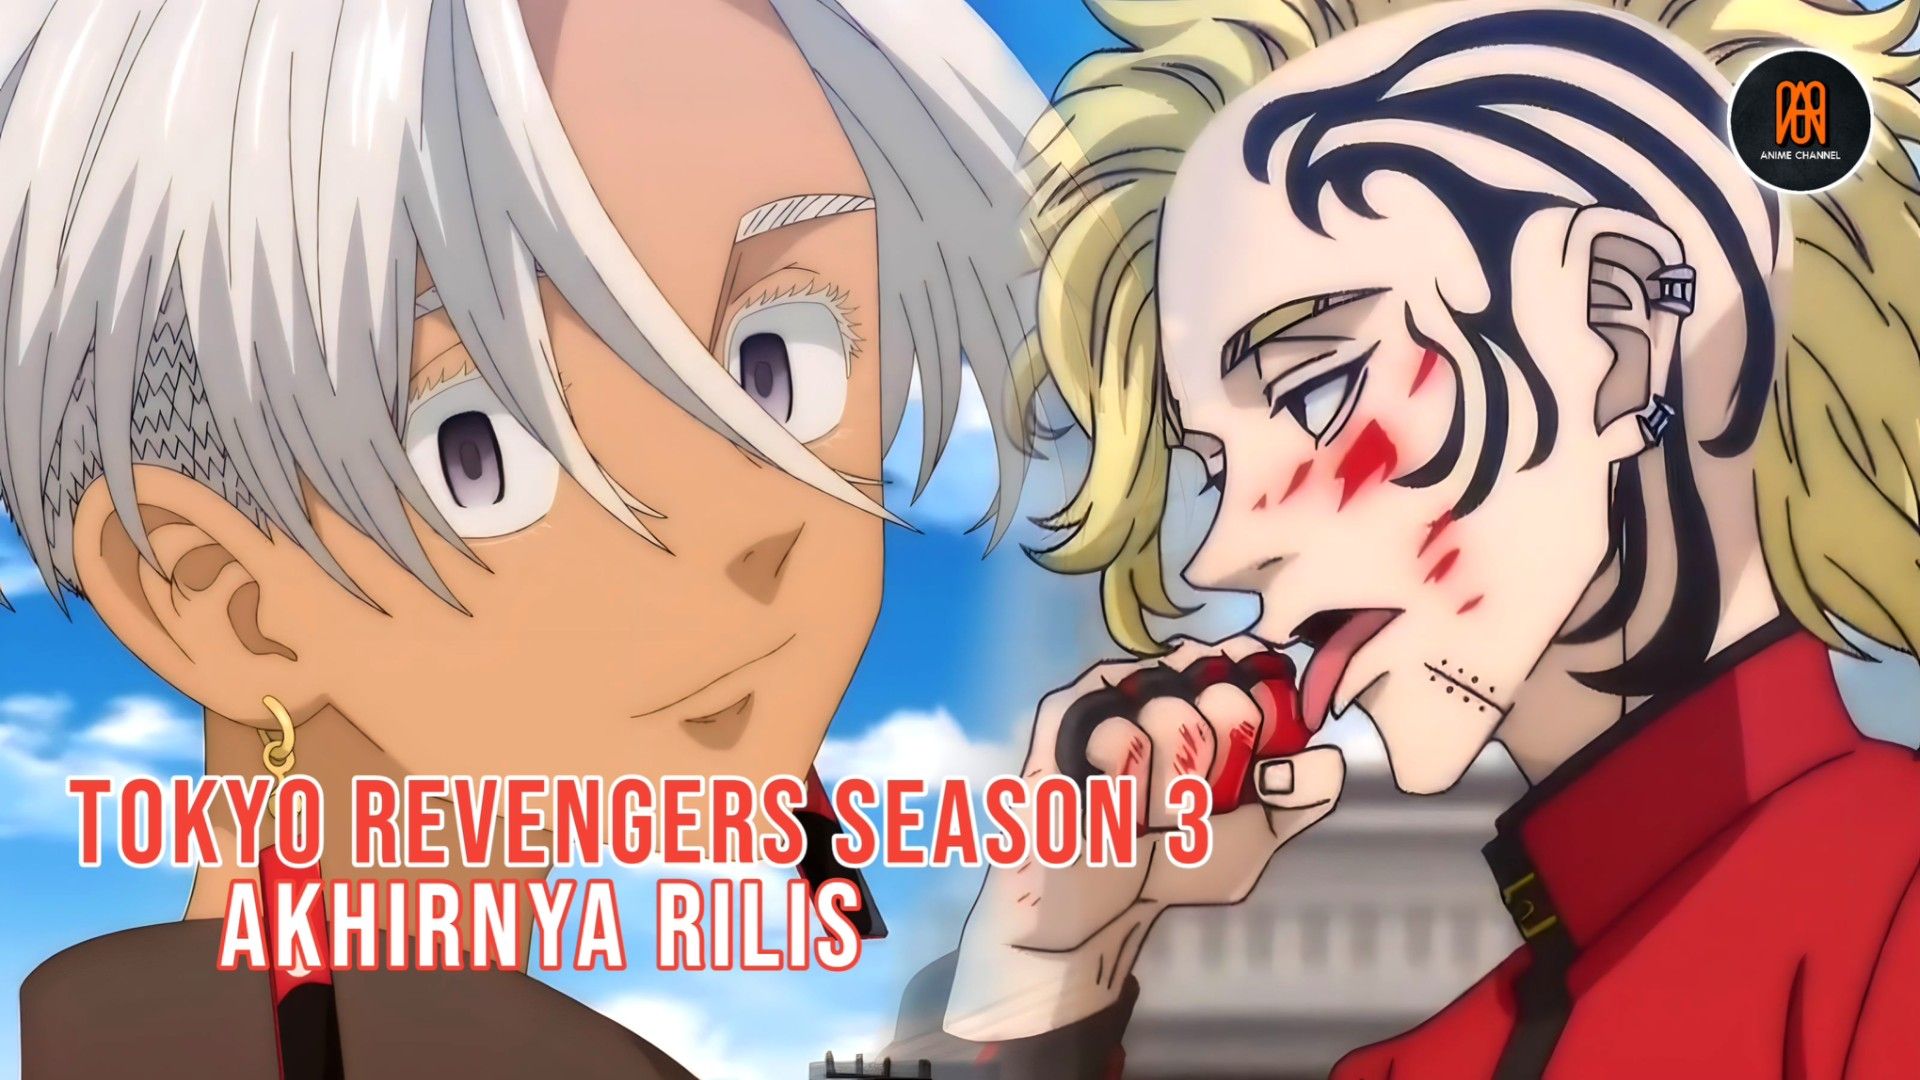 Tokyo Revengers Season 3 Episode 10  Mikey Arrives at Toman Vs Tenjiku! -  BiliBili